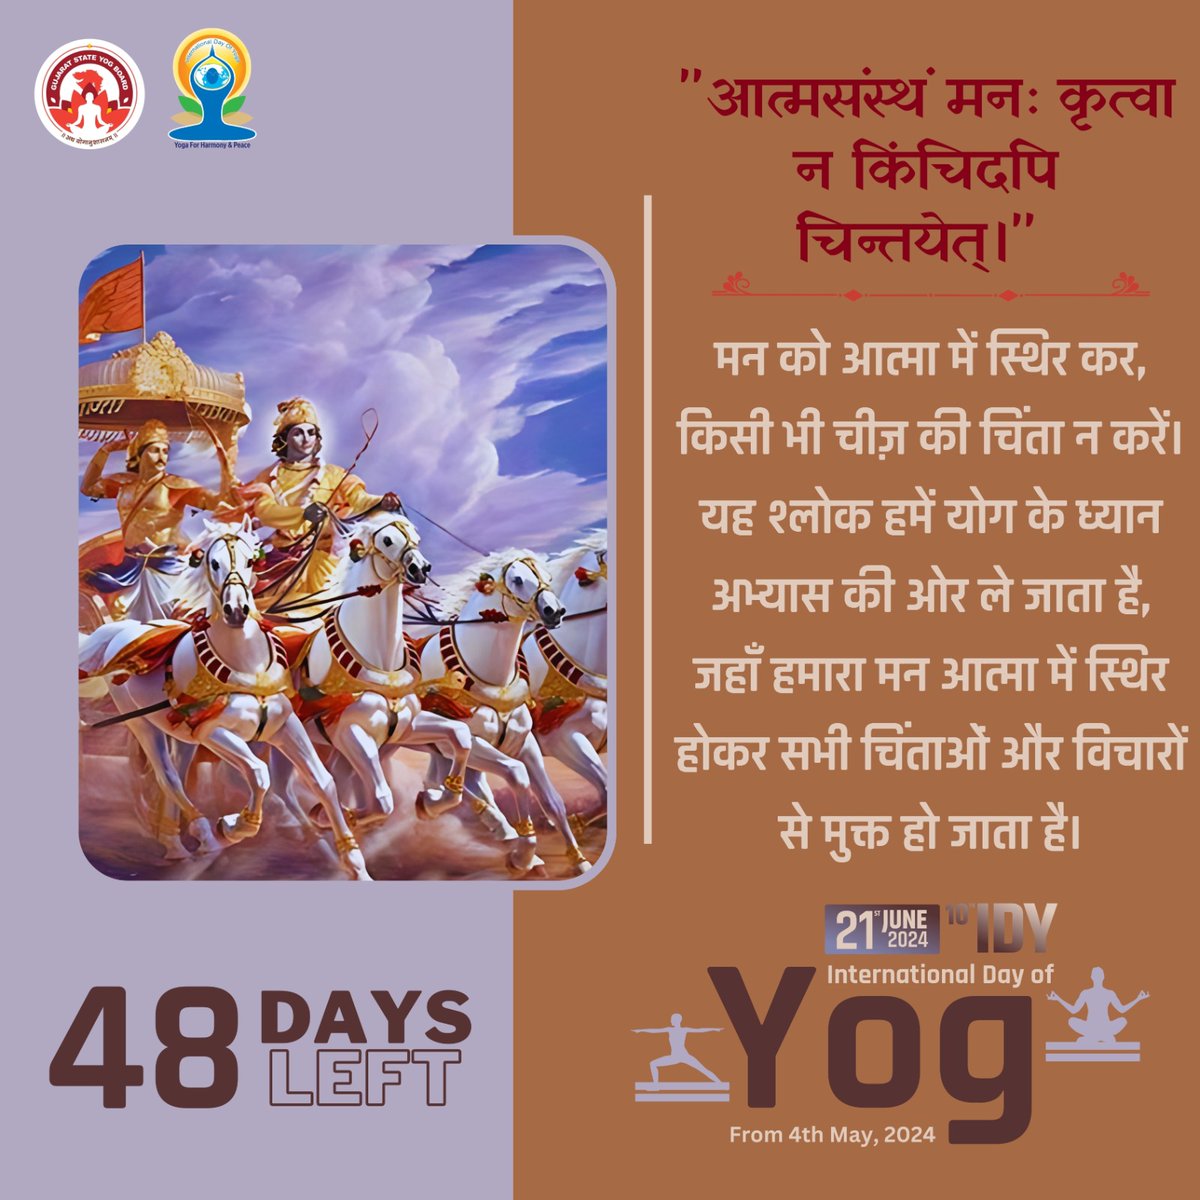 'आत्मसंस्थं मनः कृत्वा न किंचिदपि चिन्तयेत्।' 

मन को आत्मा में स्थिर कर, किसी भी चीज़ की चिंता न करें। यह श्लोक हमें योग के ध्यान अभ्यास की ओर ले जाता है, जहाँ हमारा मन

48 Days left to International Day of Yoga 2024

#GujaratStateYogBoard #YogmayGujarat #yogkaamrutkal #IDY2024